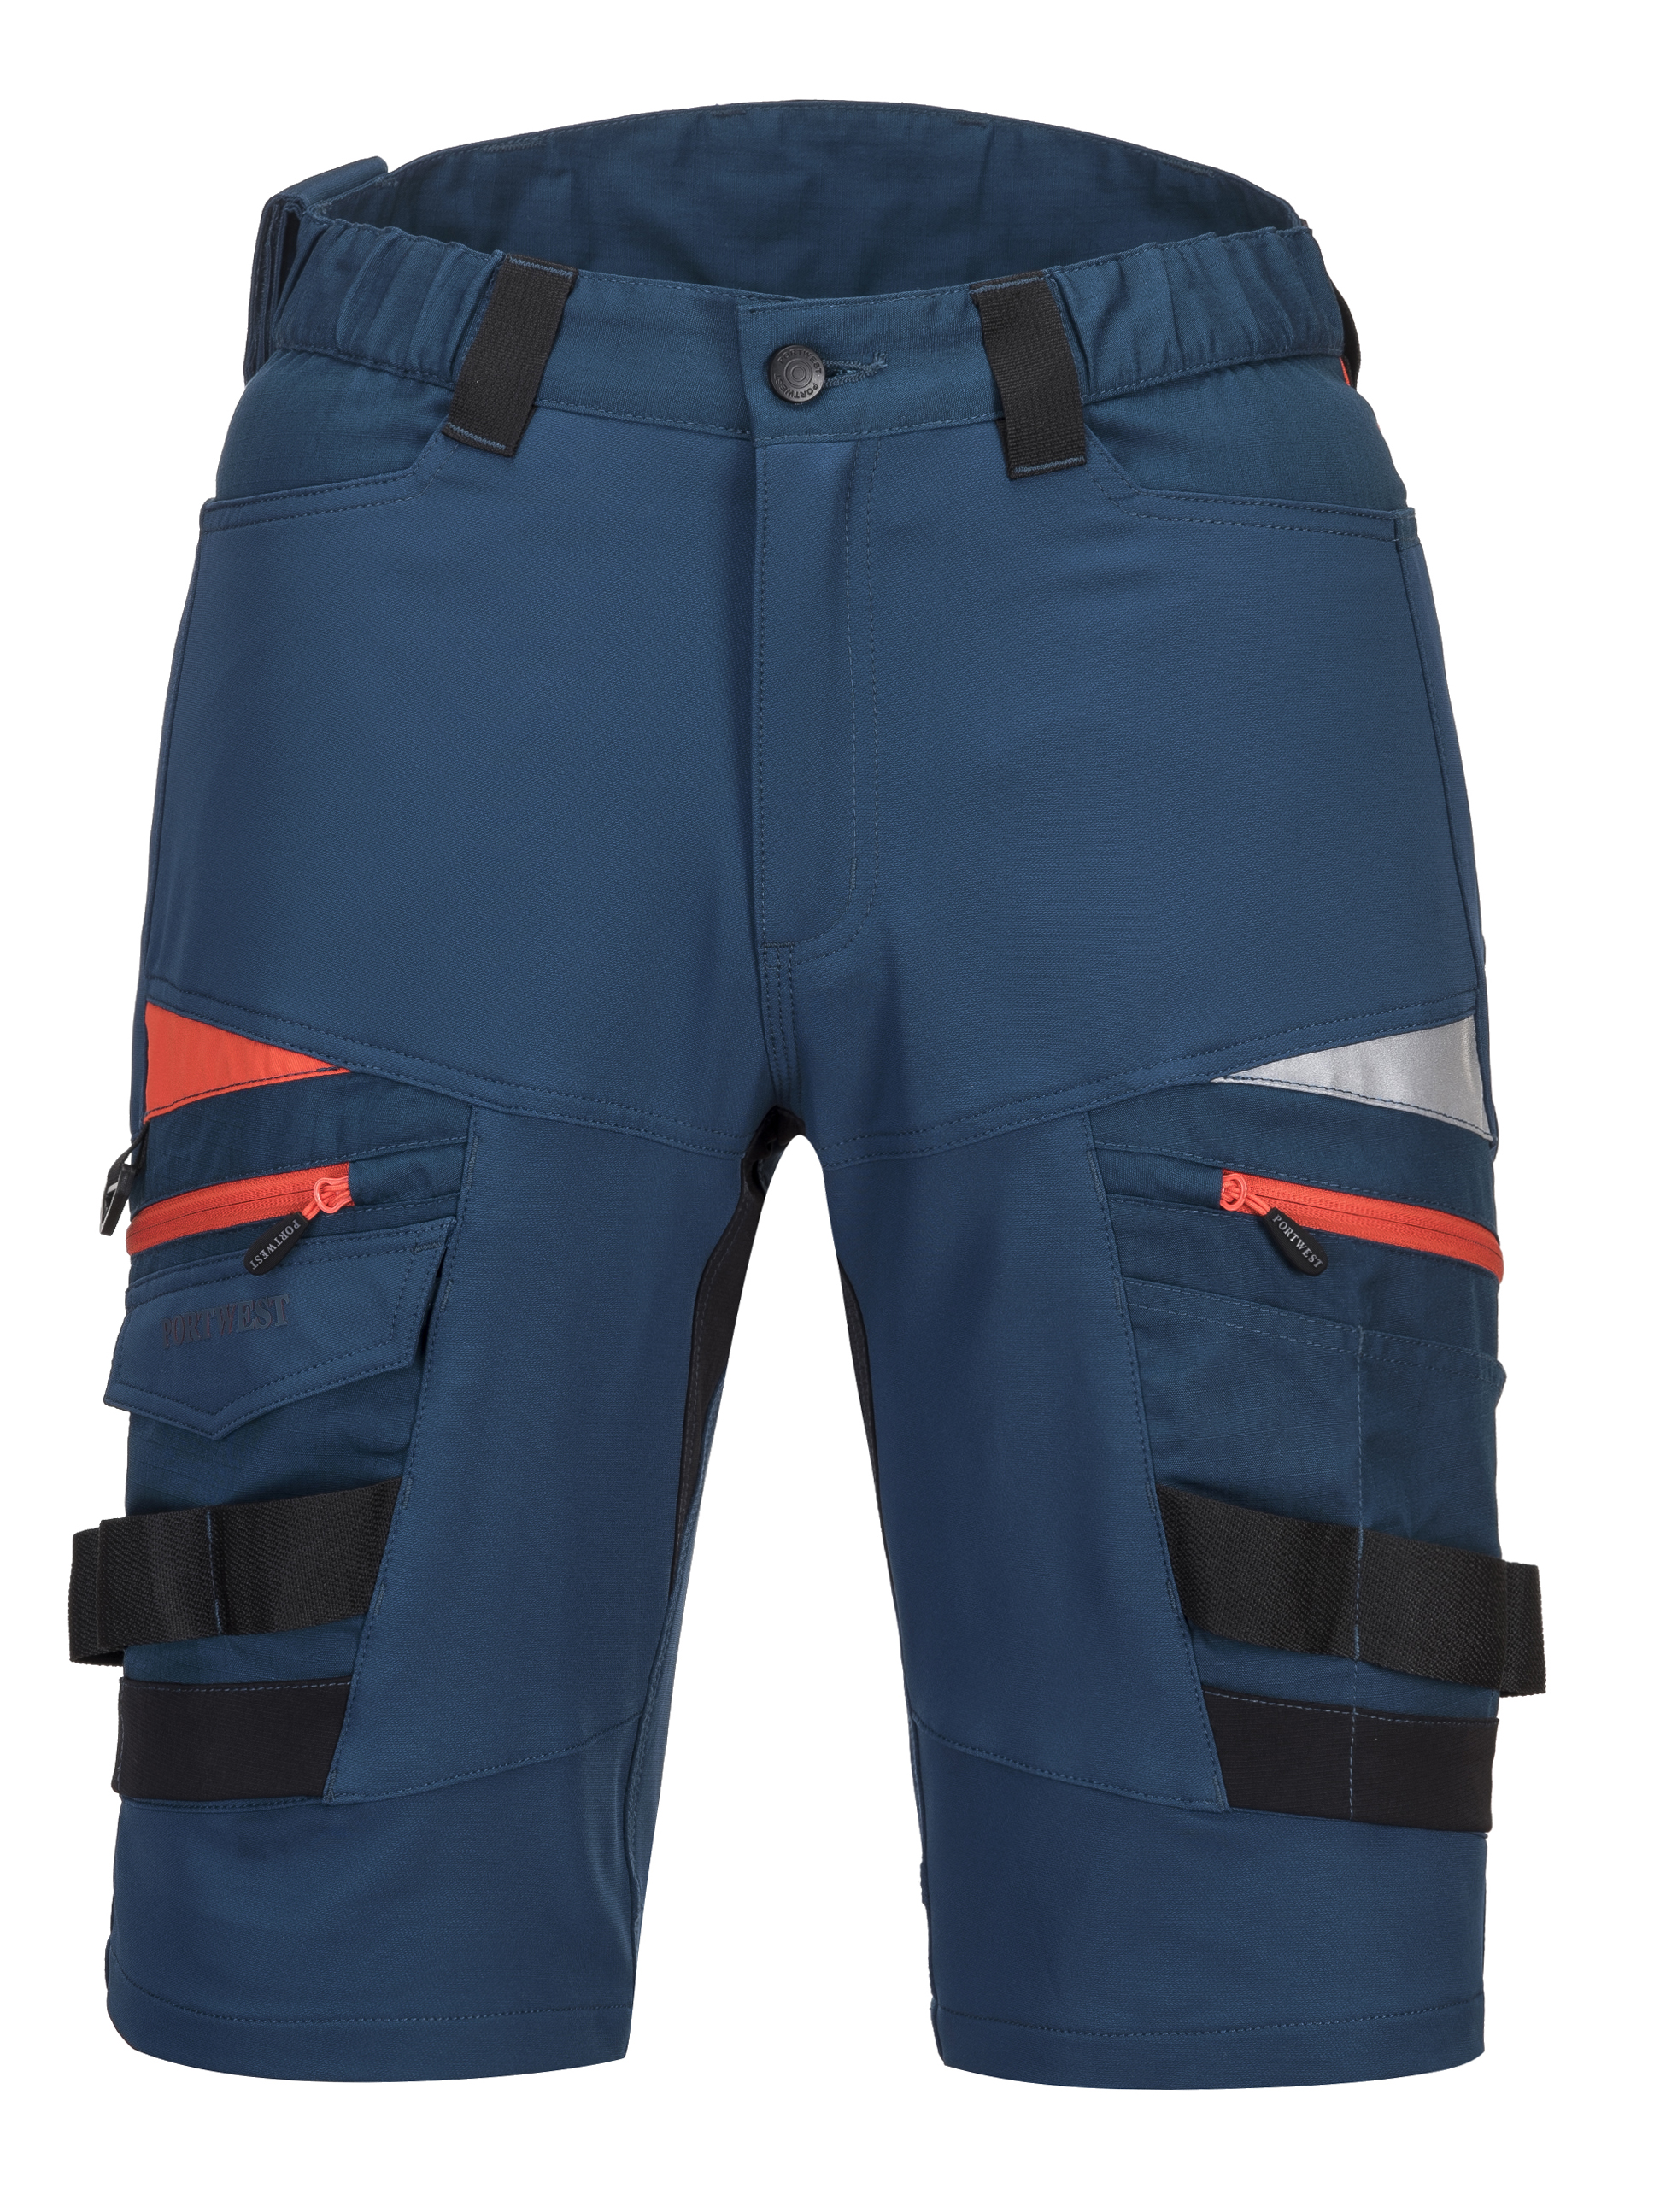 Portwest Holster Pocket Shorts Black DX444™